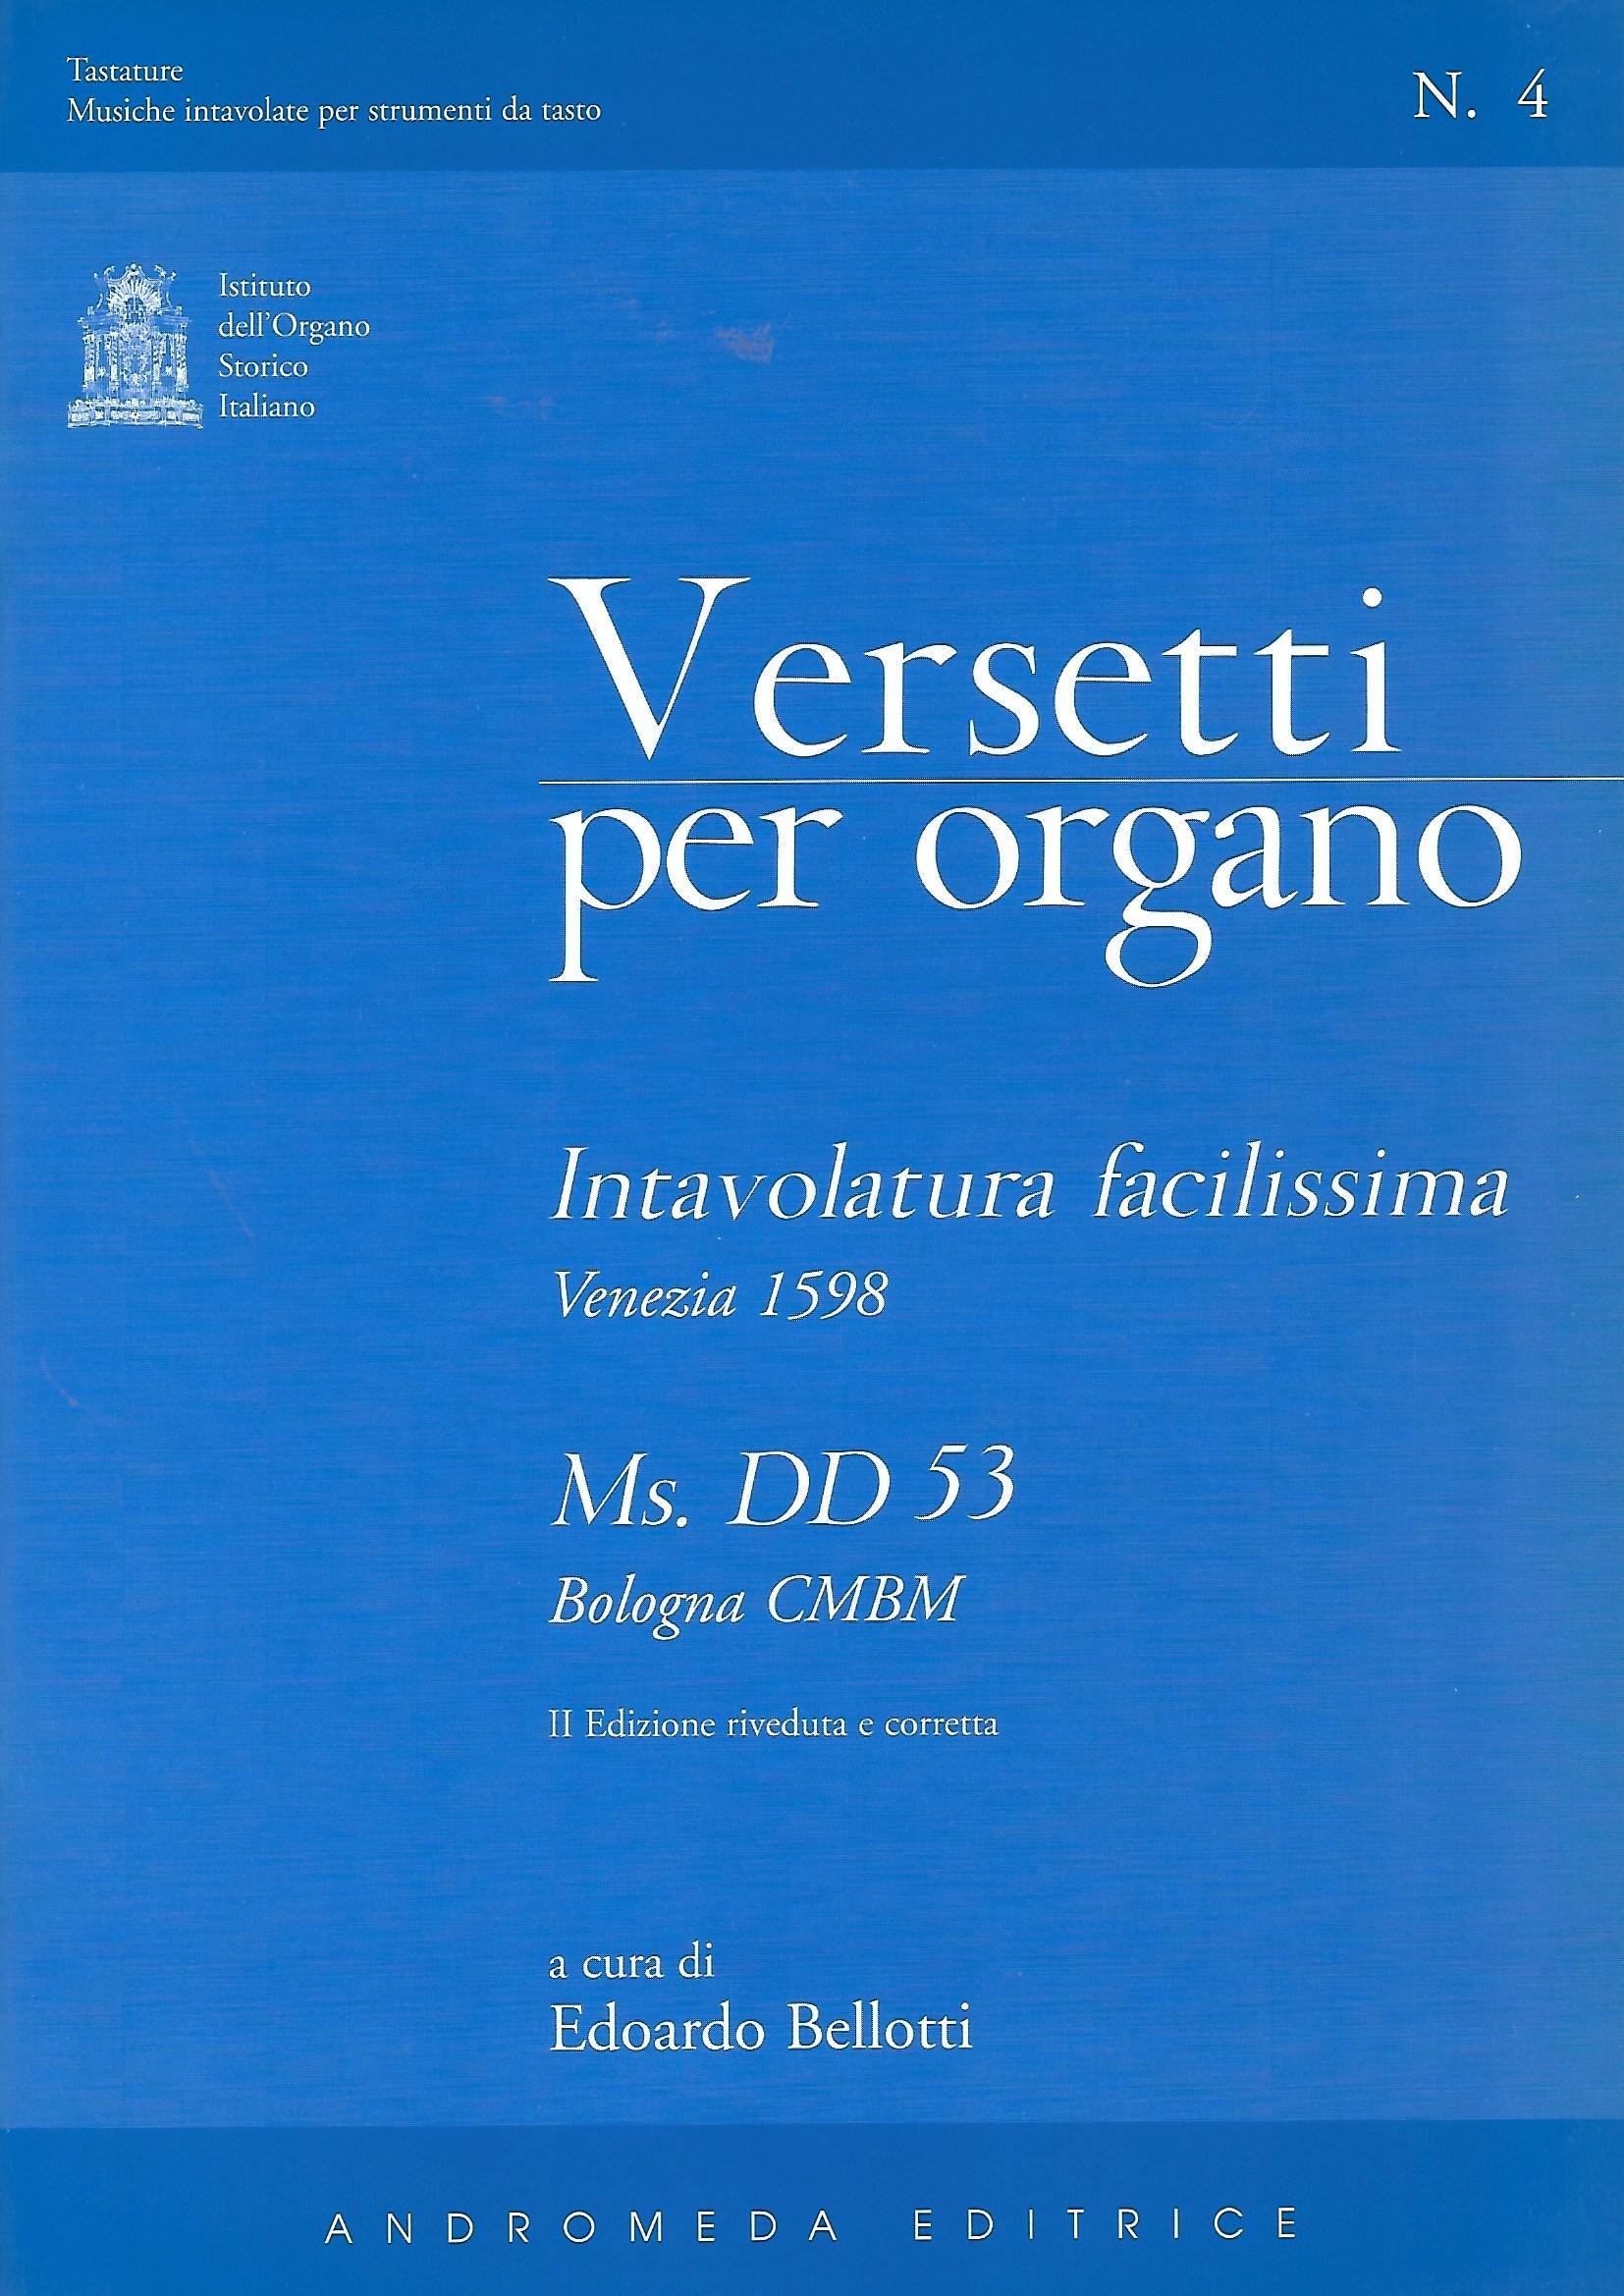 Ta 4 Versetti per organo - intavolatura facilissima - Venezia 1598